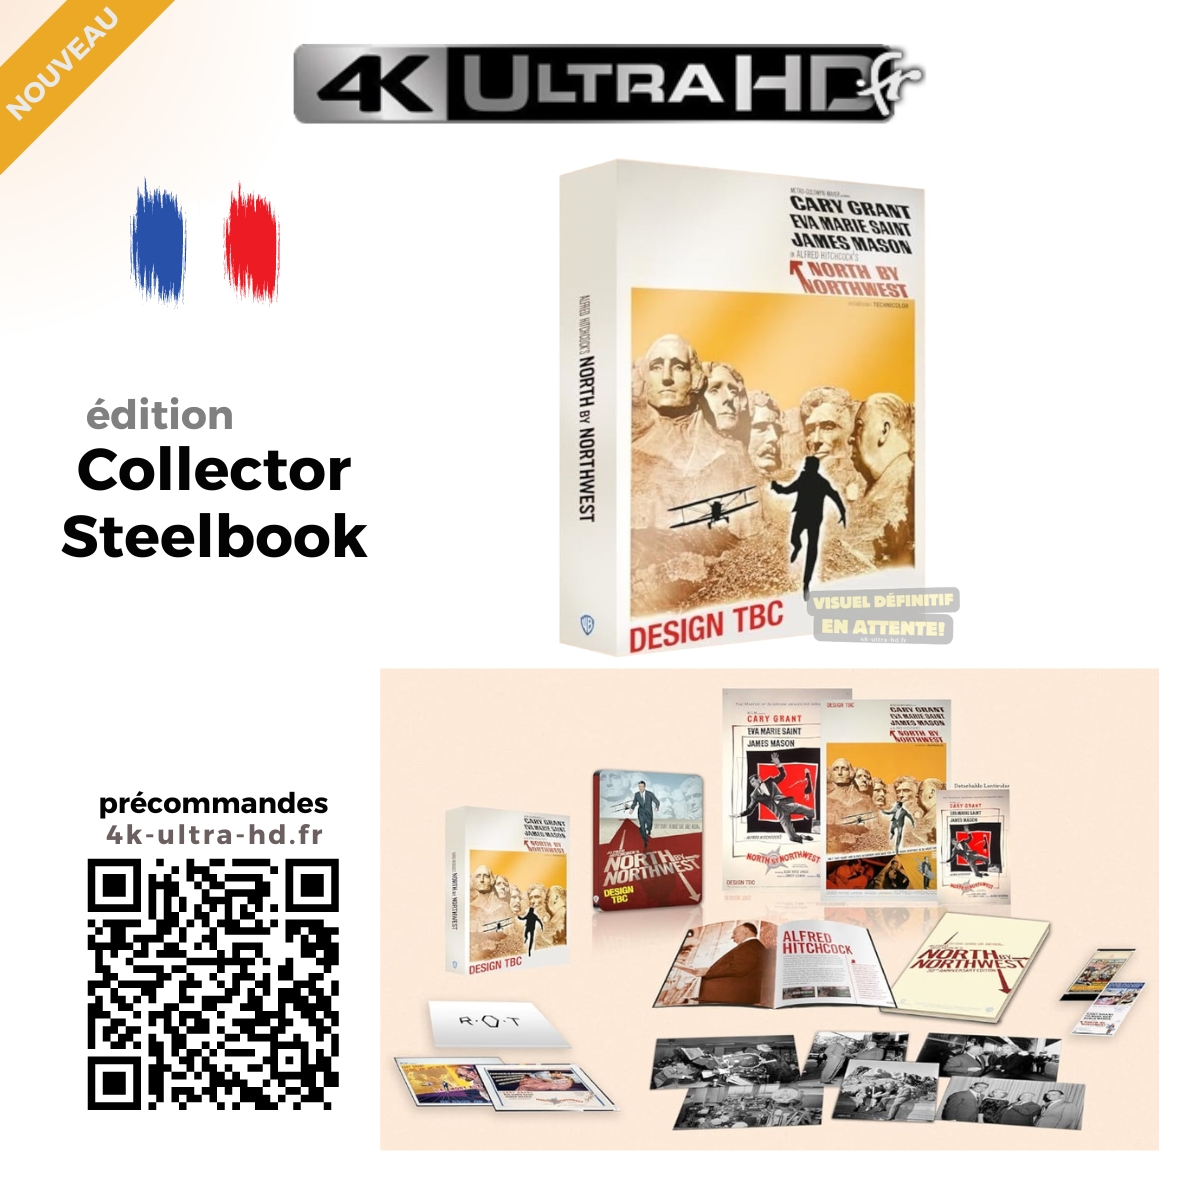 🇫🇷 Nouveau Collector #steelbook « 𝐋𝐀 𝐌𝐎𝐑𝐓 𝐀𝐔𝐗 𝐓𝐑𝐎𝐔𝐒𝐒𝐄𝐒 » !
Le Classique de #AlfredHitchcock avec #CaryGrant.

💿 Préco : 4k-ultra-hd.fr/film/la-mort-a…

ℹ️ #editioncollector #editionlimitee #BluRay4K + #Bluray + Goodies.
Détails dans le lien ci-dessus.